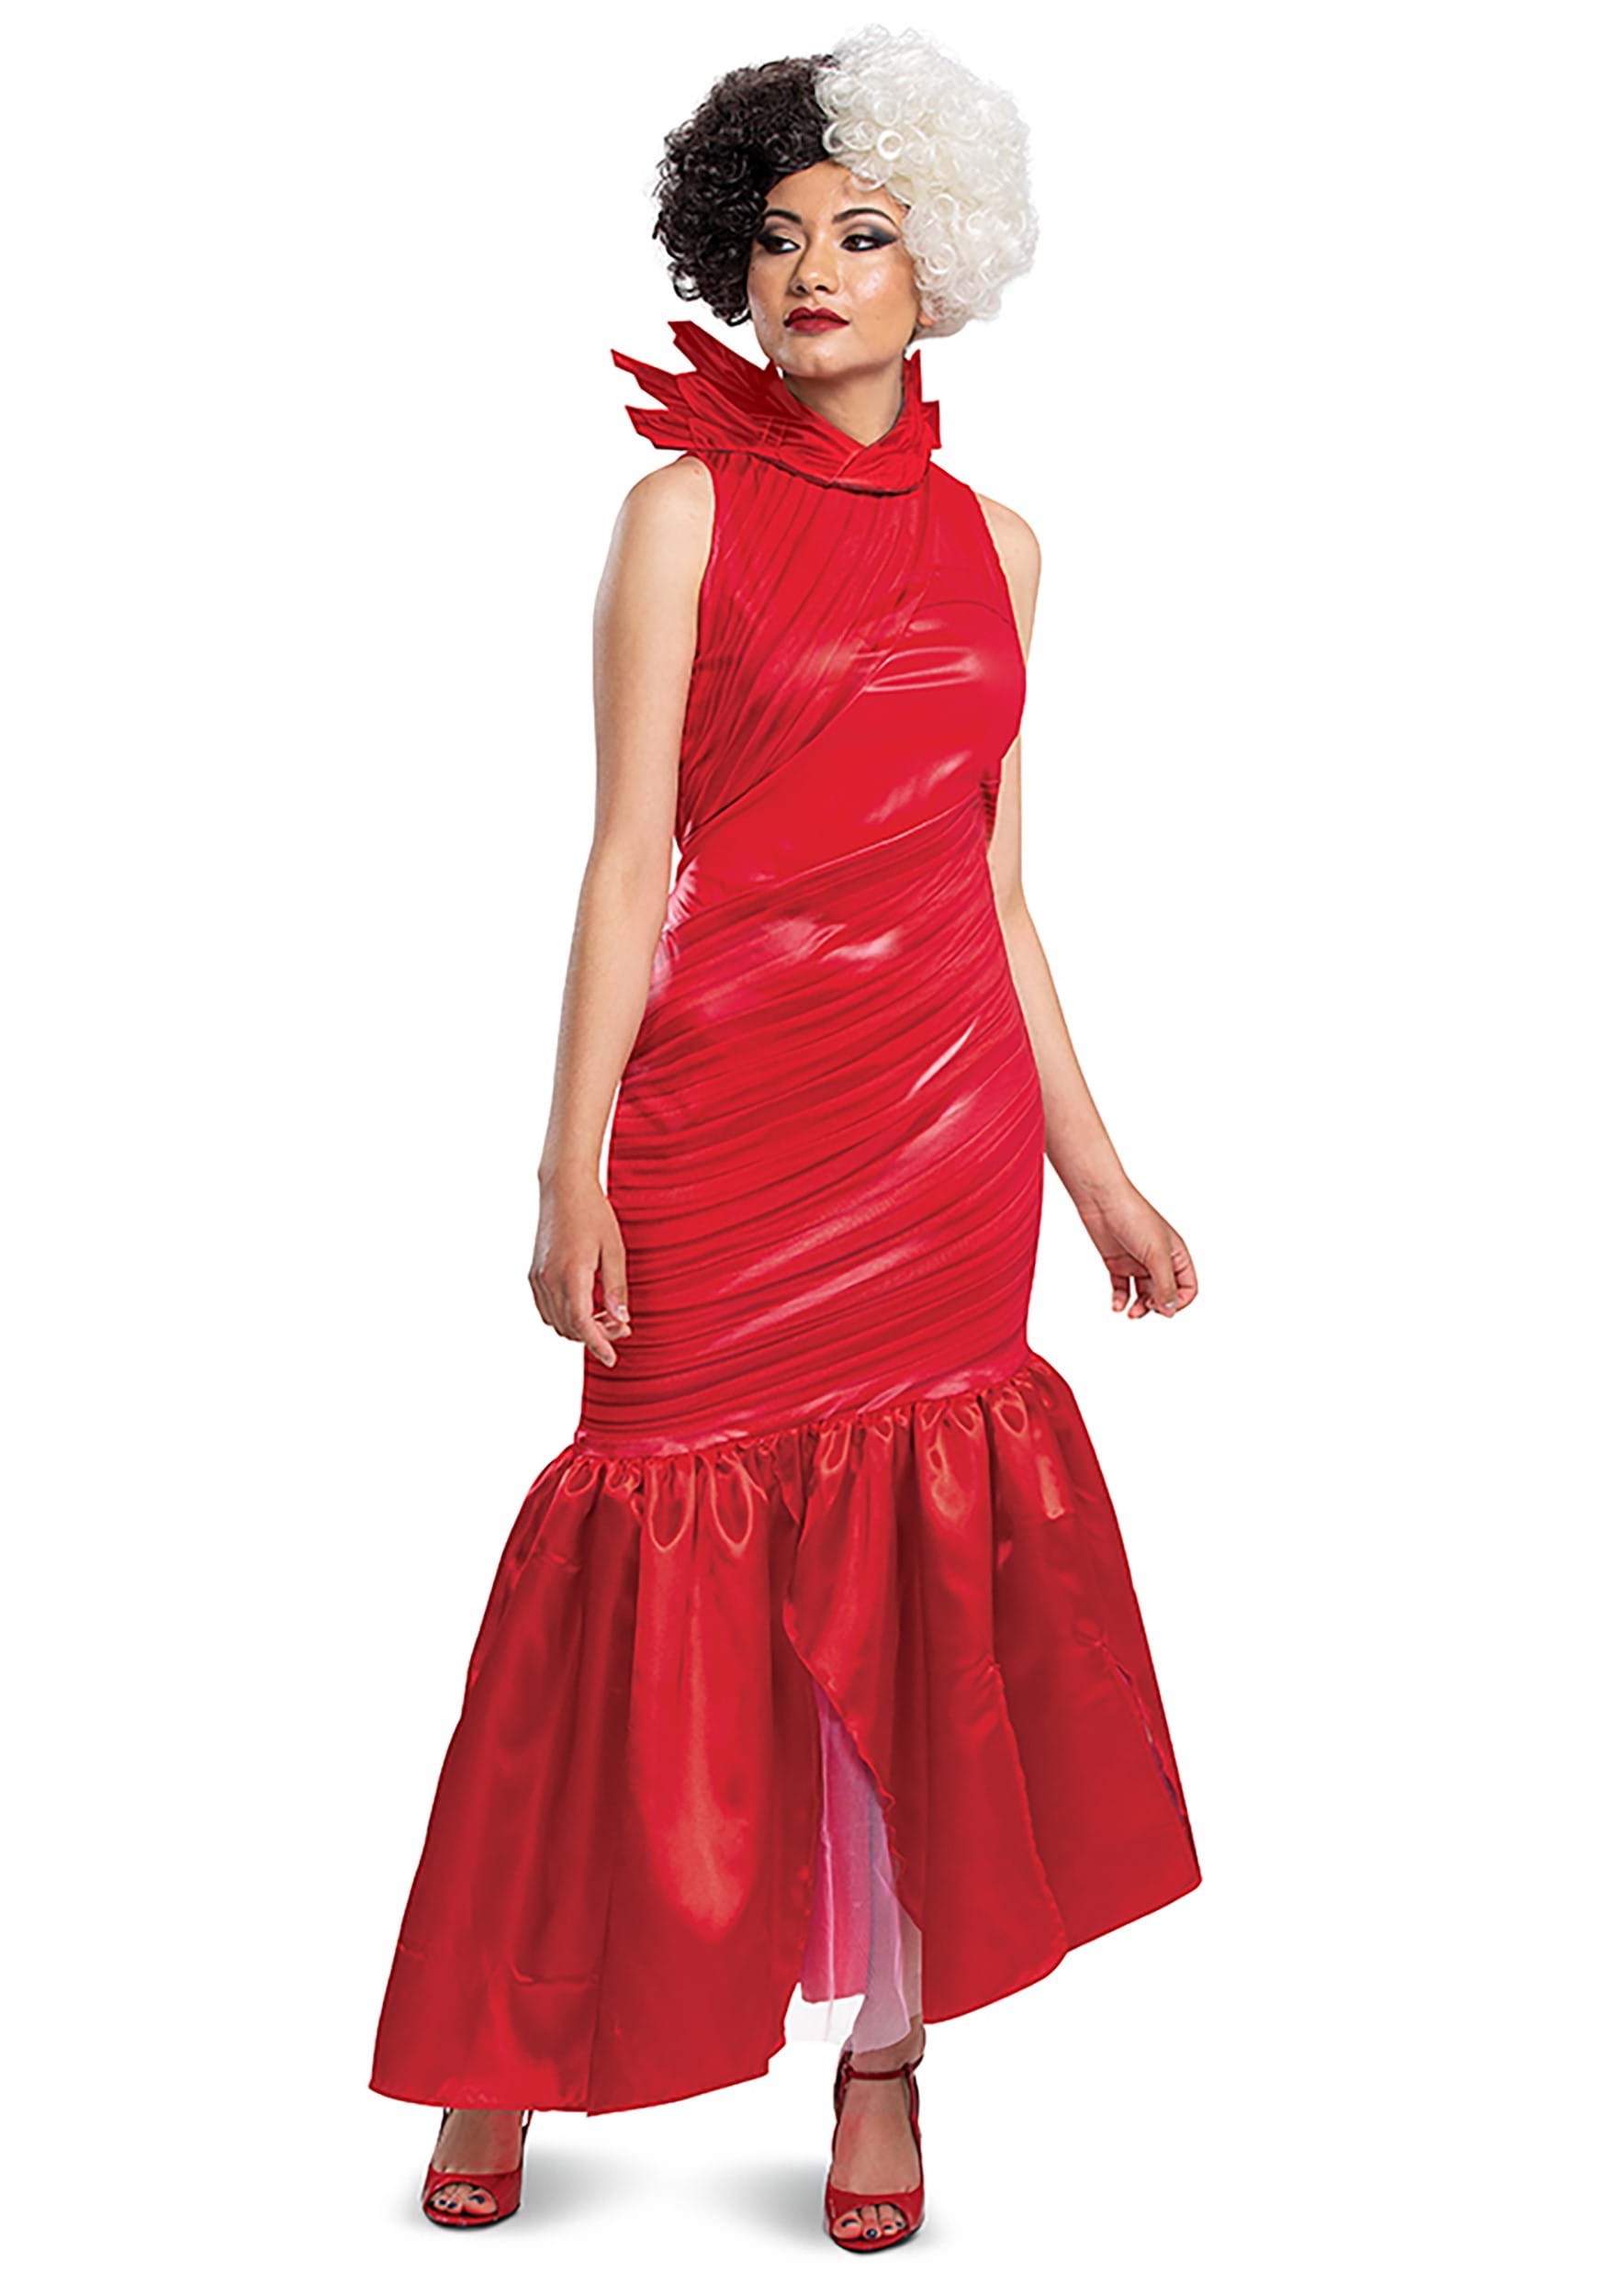 Image of Adult Cruella Red Dress Classic Costume ID DI118539-S